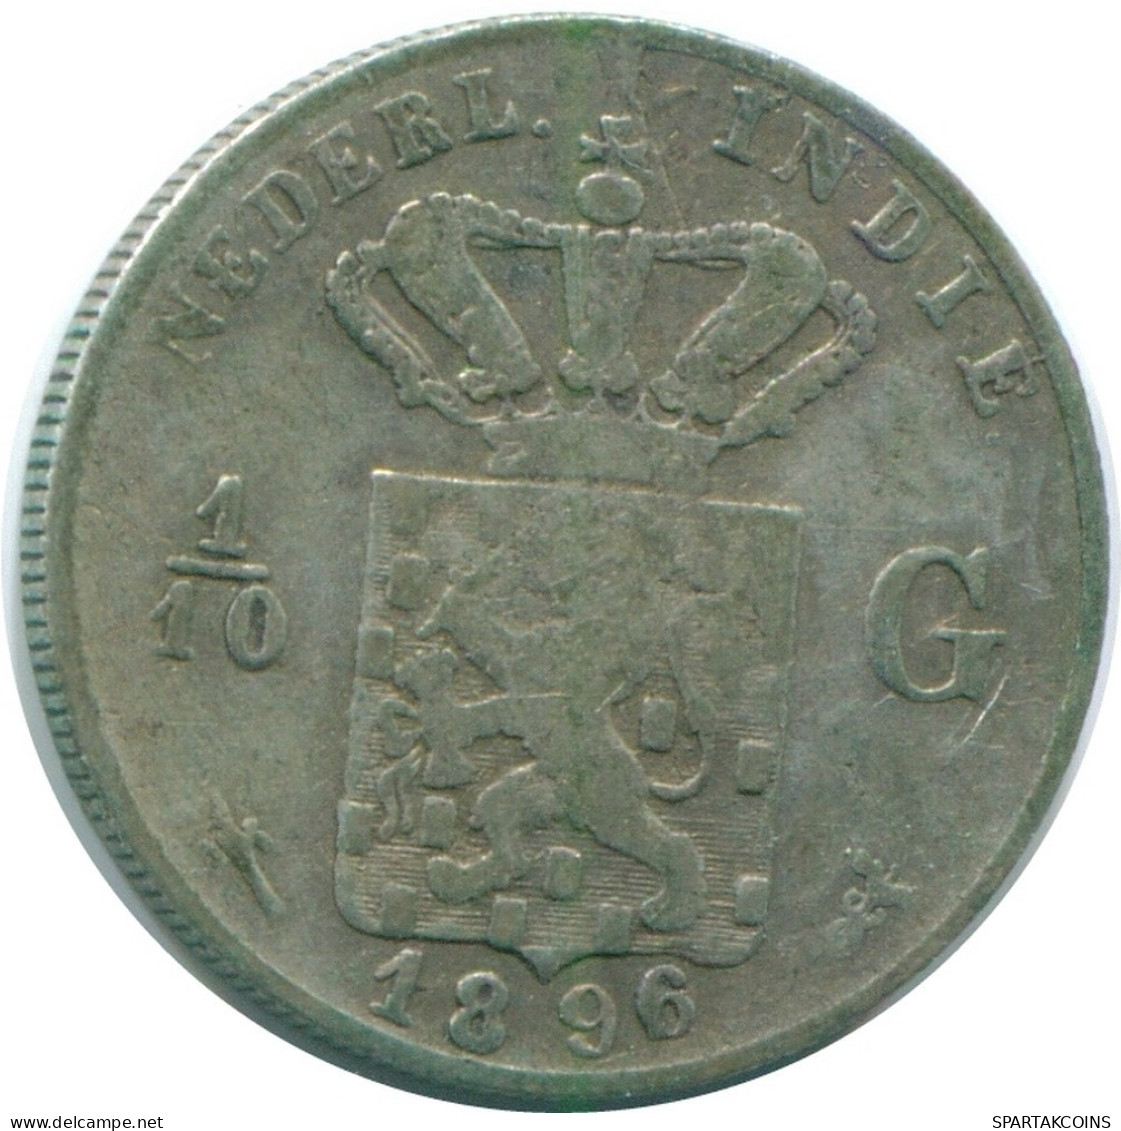 1/10 GULDEN 1896 INDIAS ORIENTALES DE LOS PAÍSES BAJOS PLATA #NL13199.3.E.A - Dutch East Indies